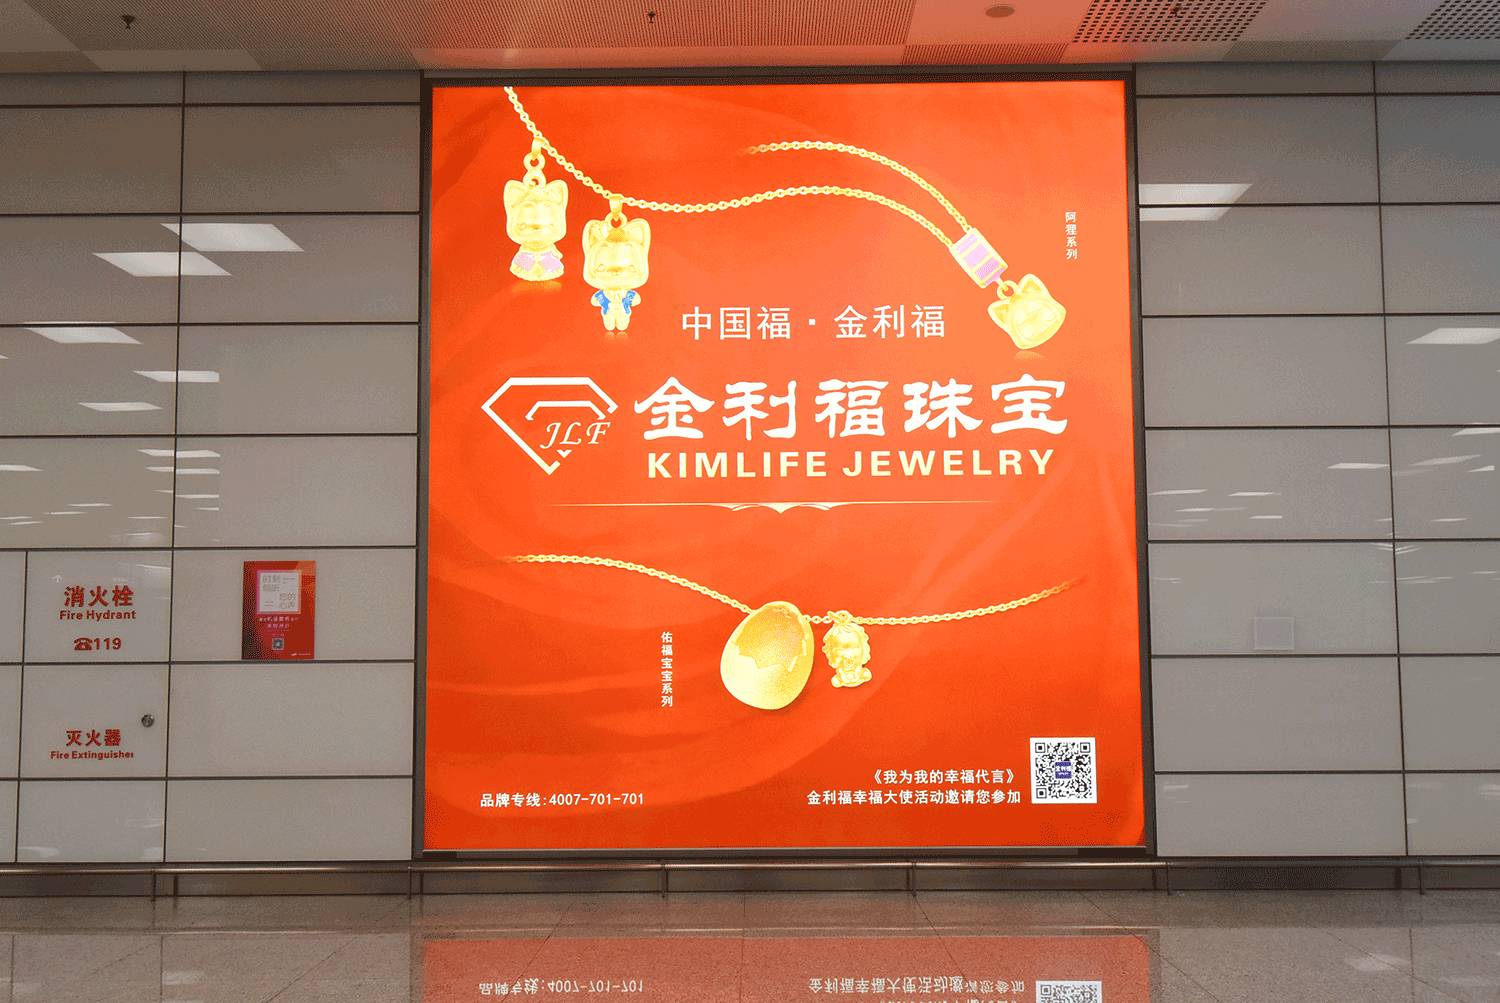 金利福品牌再升级!首波户外广告强势登陆郑州新郑国际机场